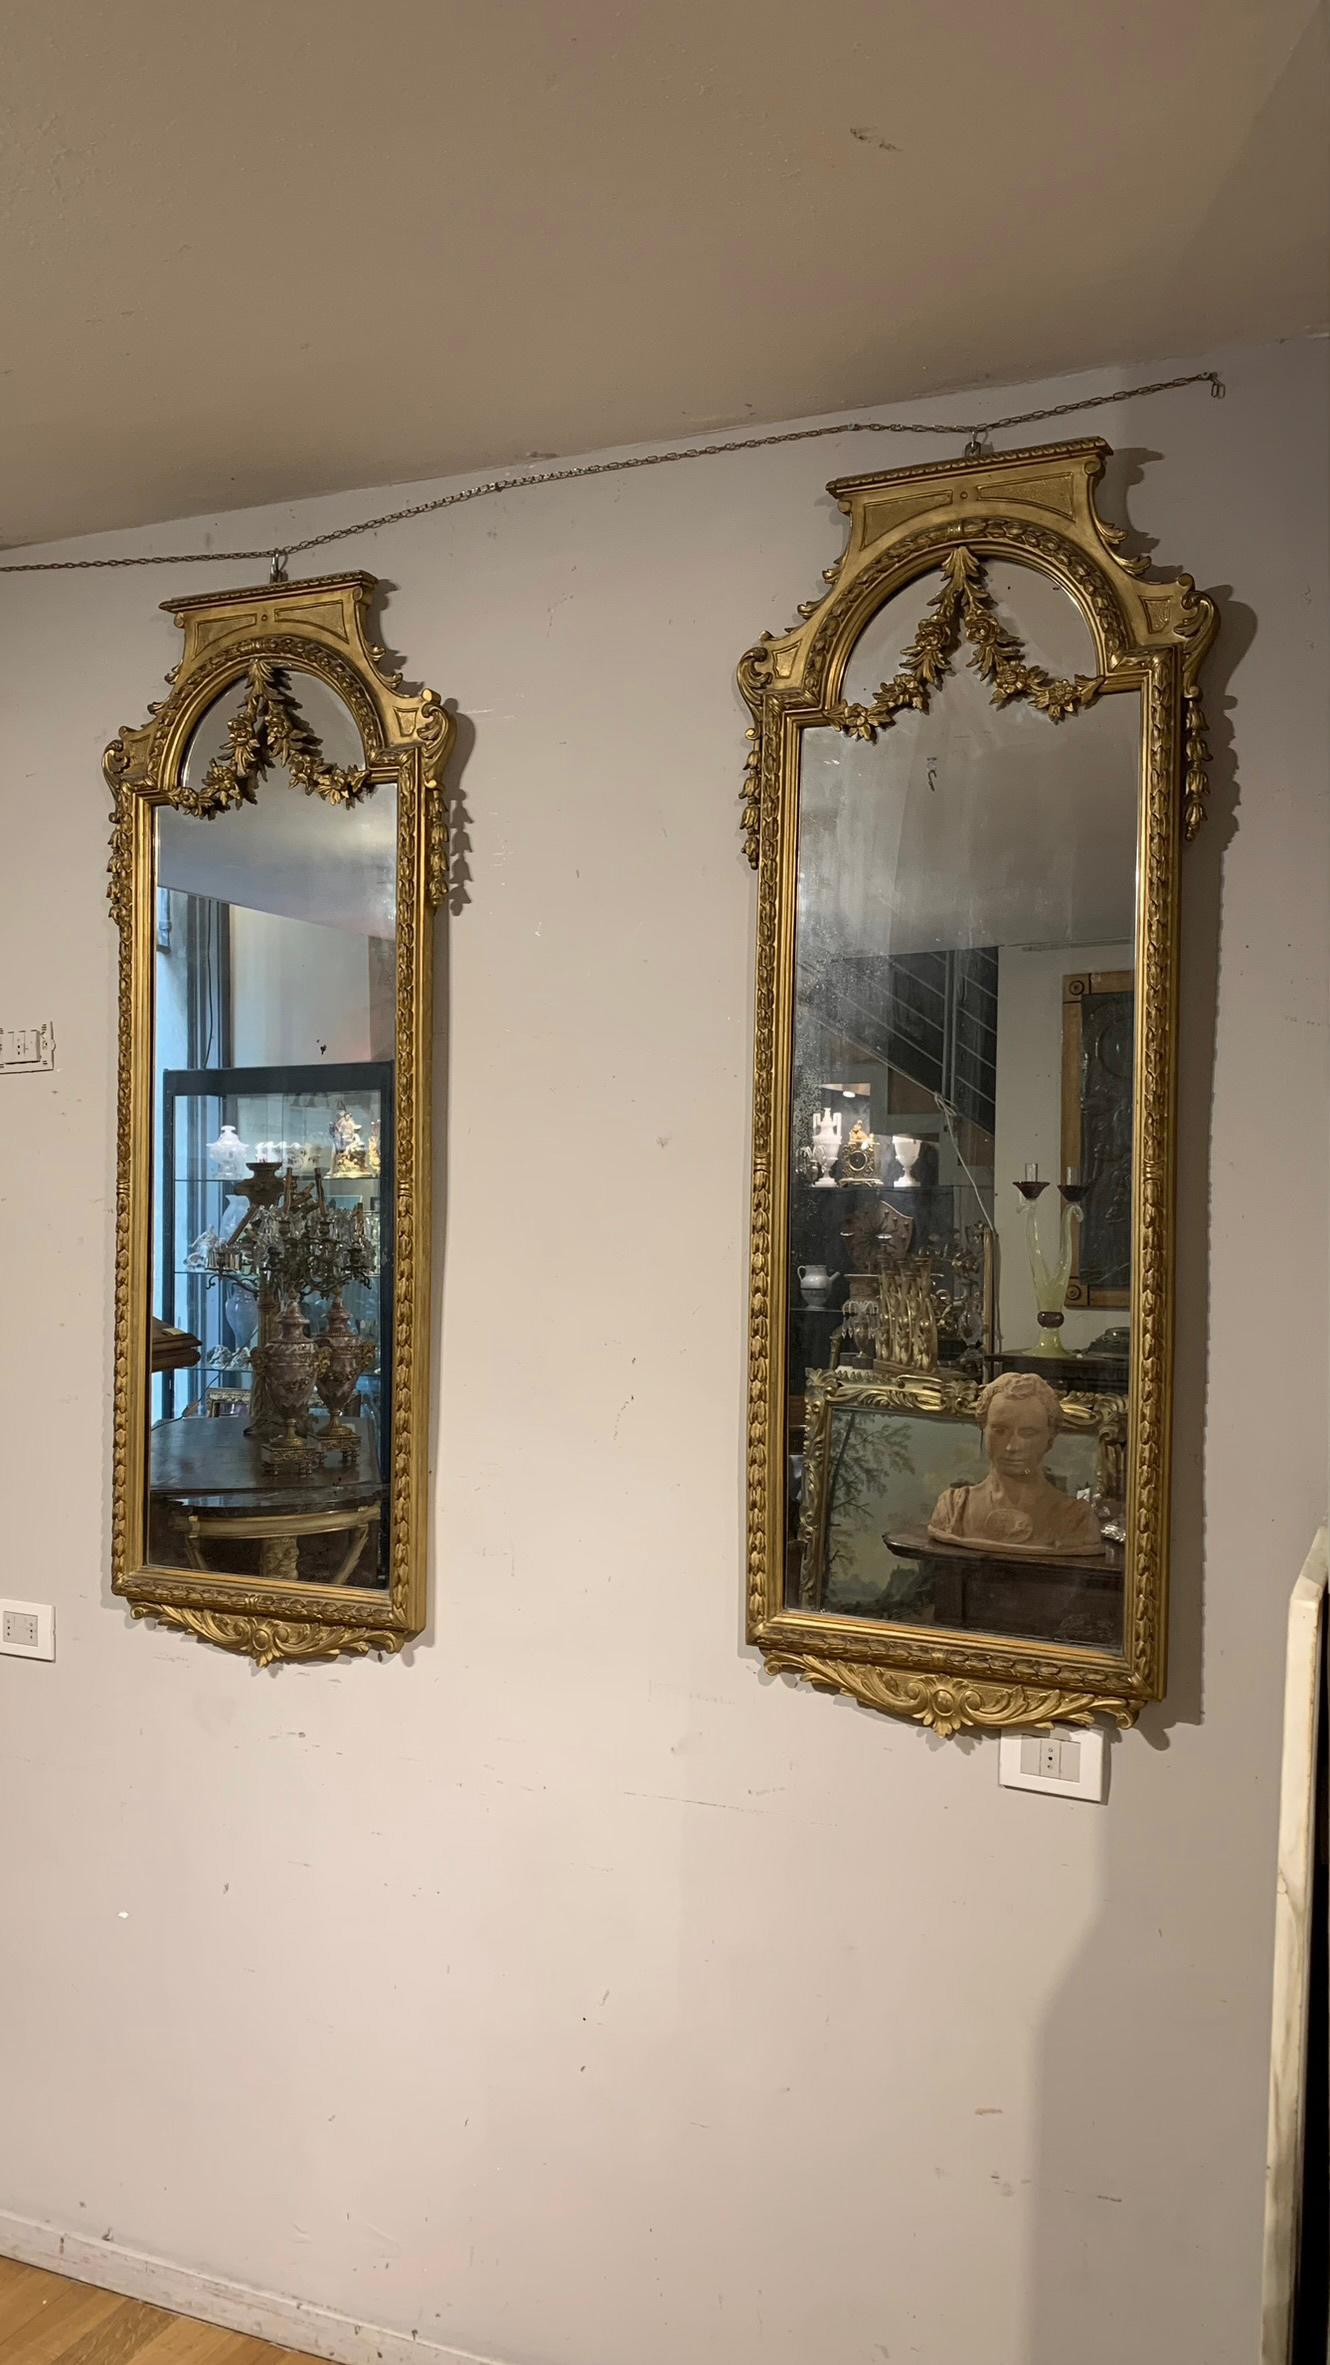 Magnifique paire de miroirs de style néoclassique en bois sculpté et doré à la feuille d'or pur. Les miroirs sont décorés de délicats rameaux végétaux qui s'étendent jusqu'à la partie supérieure, où ils se joignent à une guirlande décorative qui